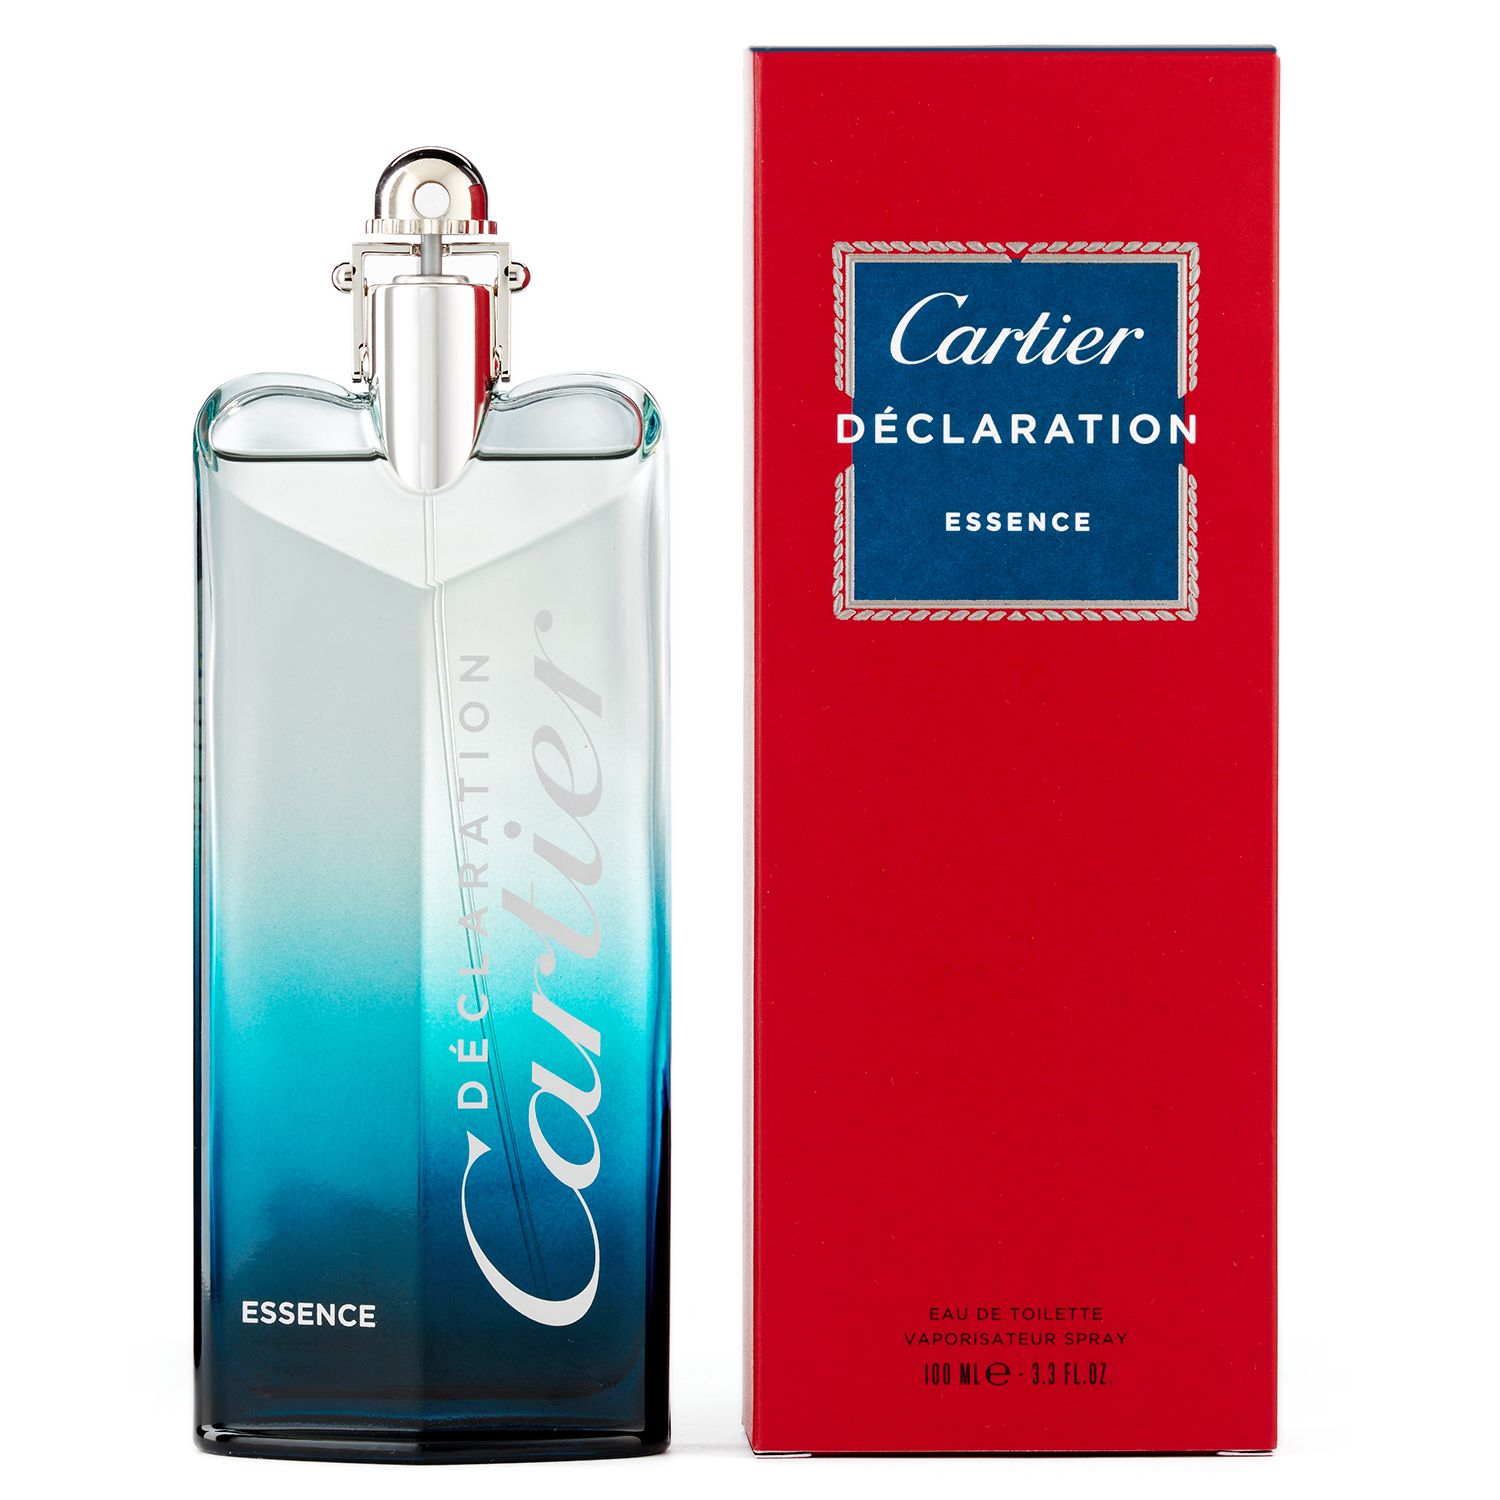 Cartier Declaration Essence Men's Cologne